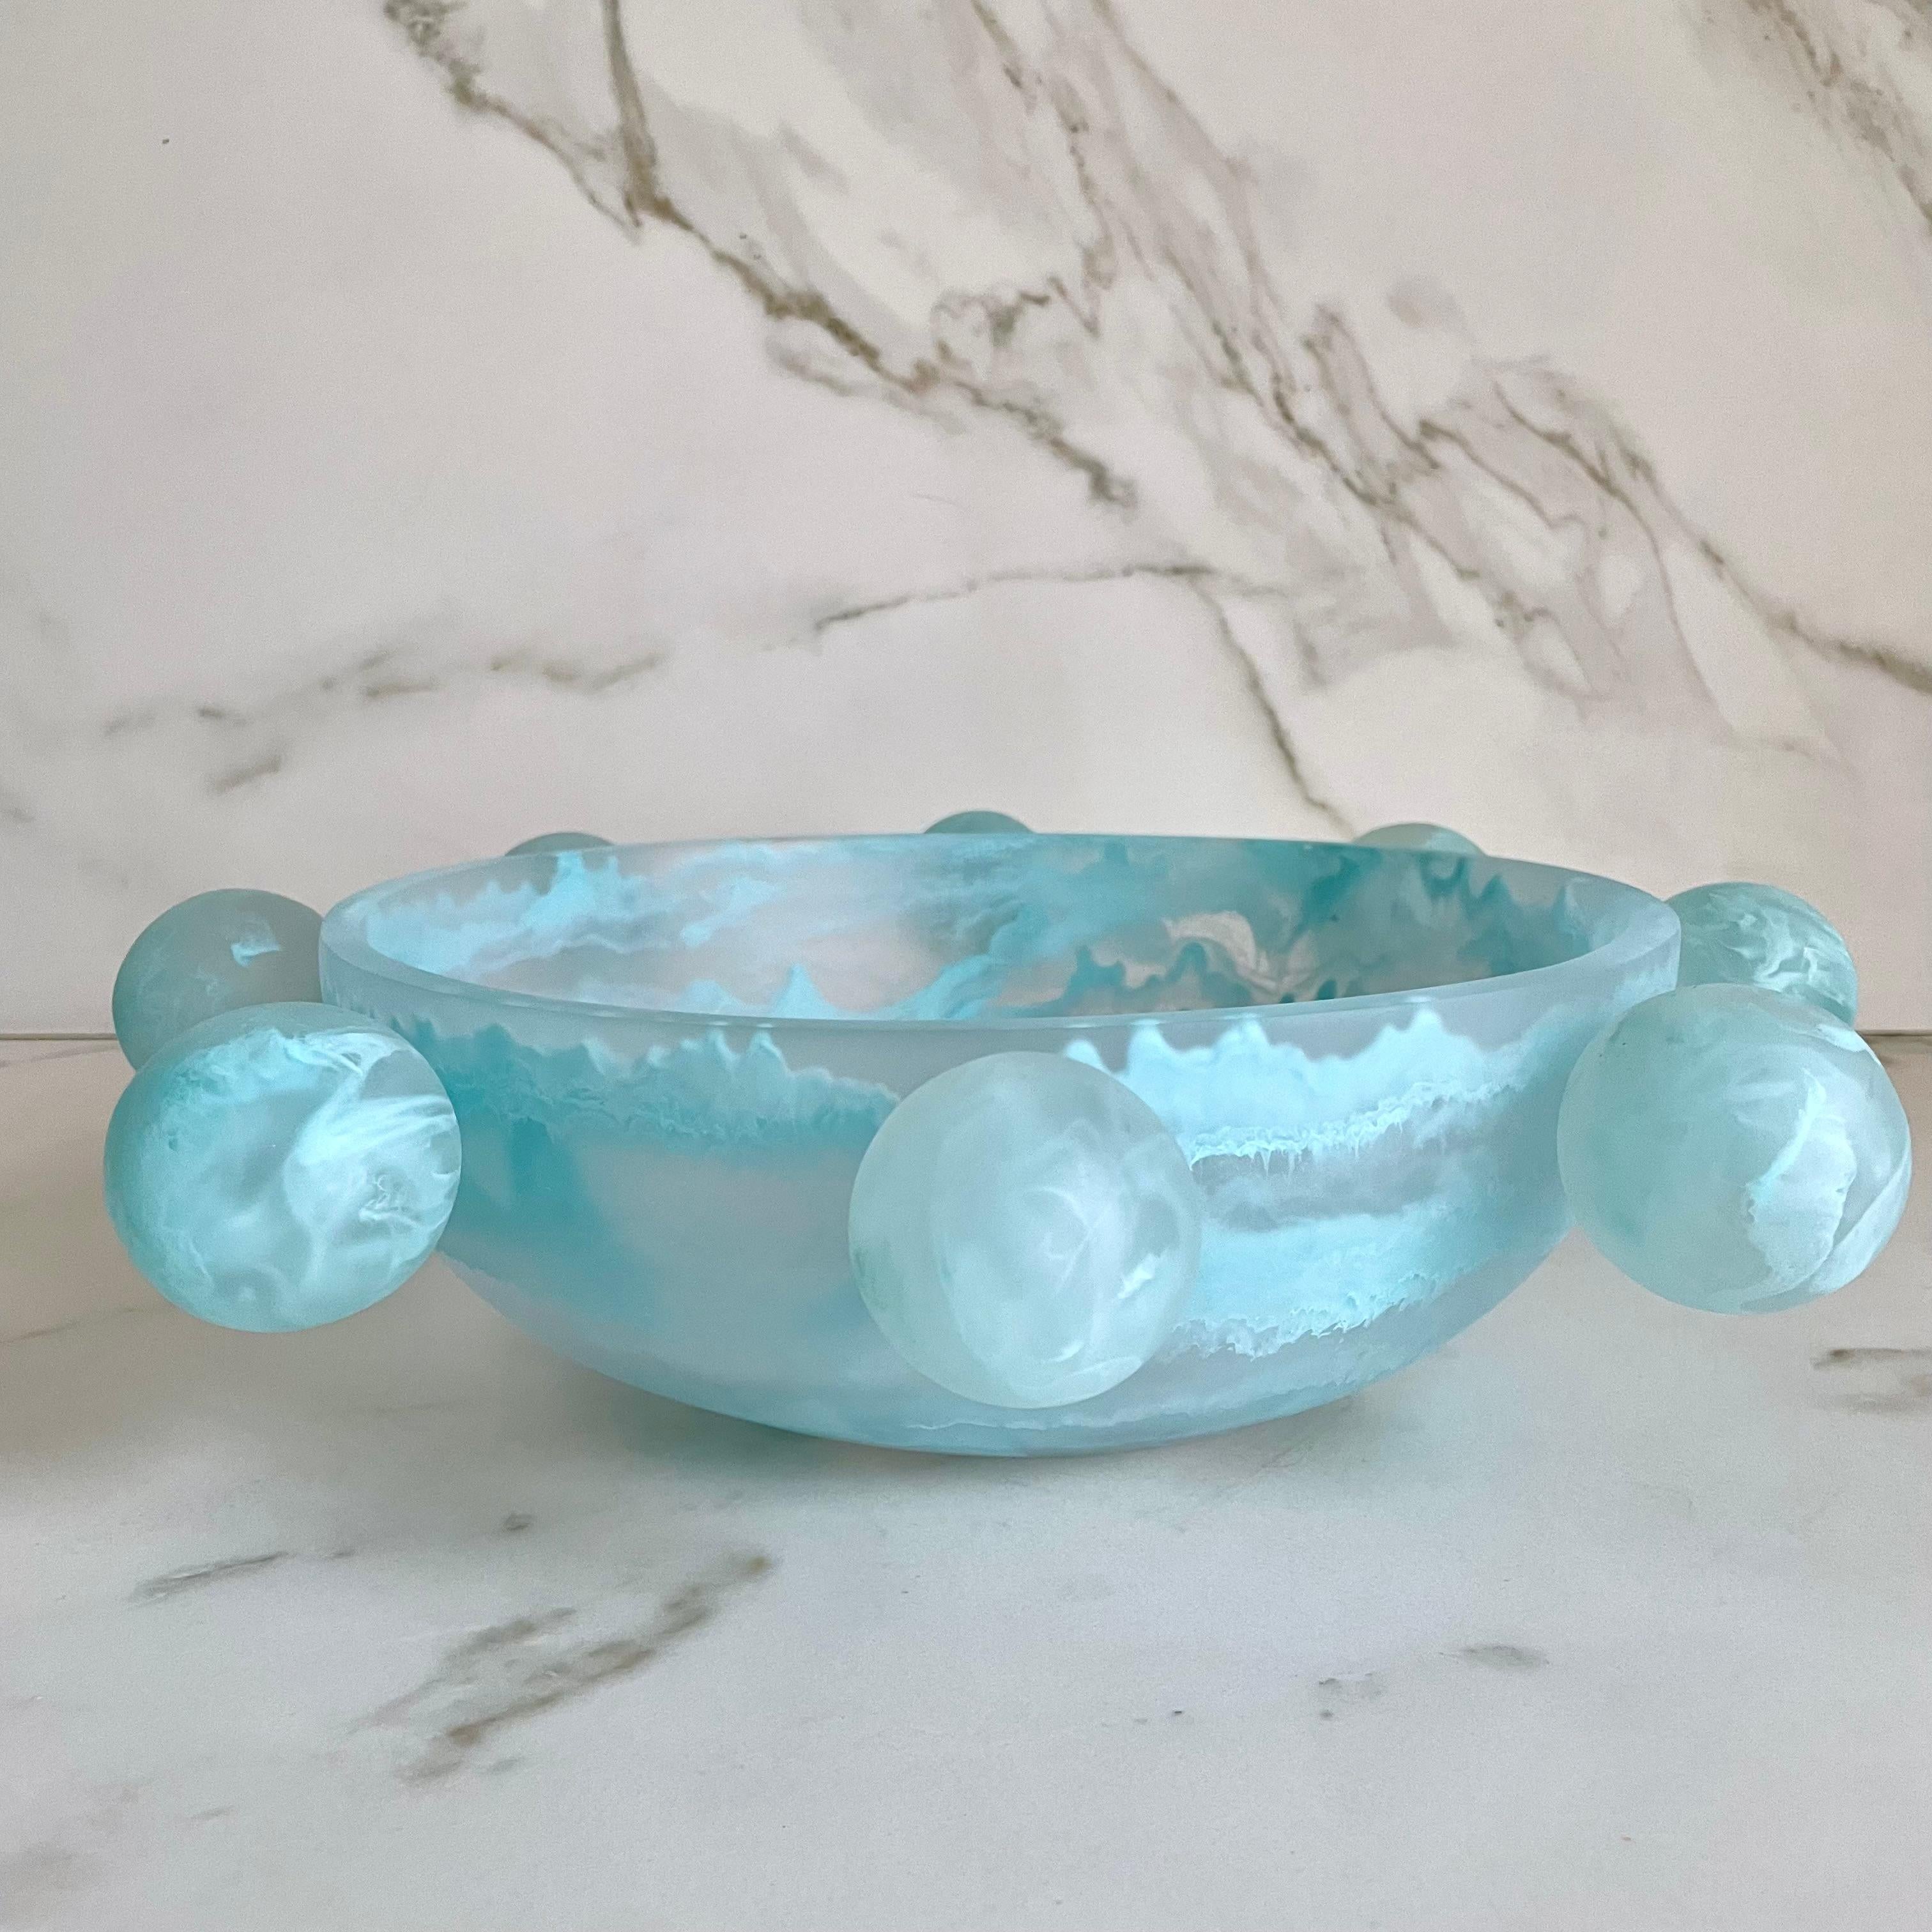 Unsere Bubble Bowl ist handgefertigt aus klarem Harz mit aquamarmorierter Struktur. Sein modernes, lustiges und einzigartiges Design macht ihn zu einem Blickfang und kann als Dekoration oder als Obstteller verwendet werden.

Entworfen von Paola